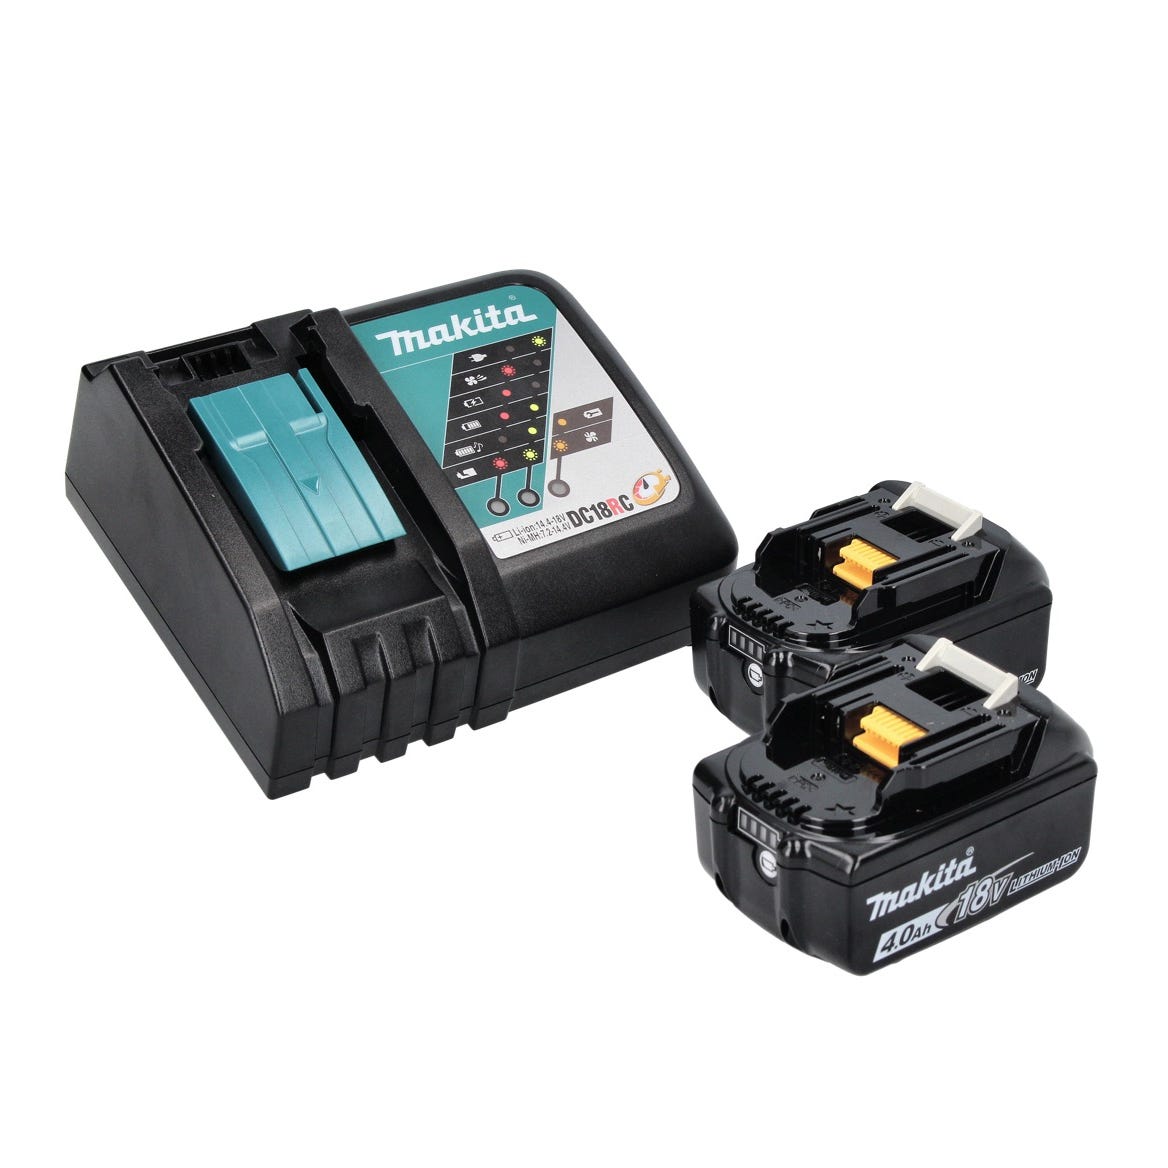 Makita DDF 485 RM perceuse/visseuse sans fil 18 V 50 Nm Brushless + 2x batterie 4,0 Ah + chargeur 2